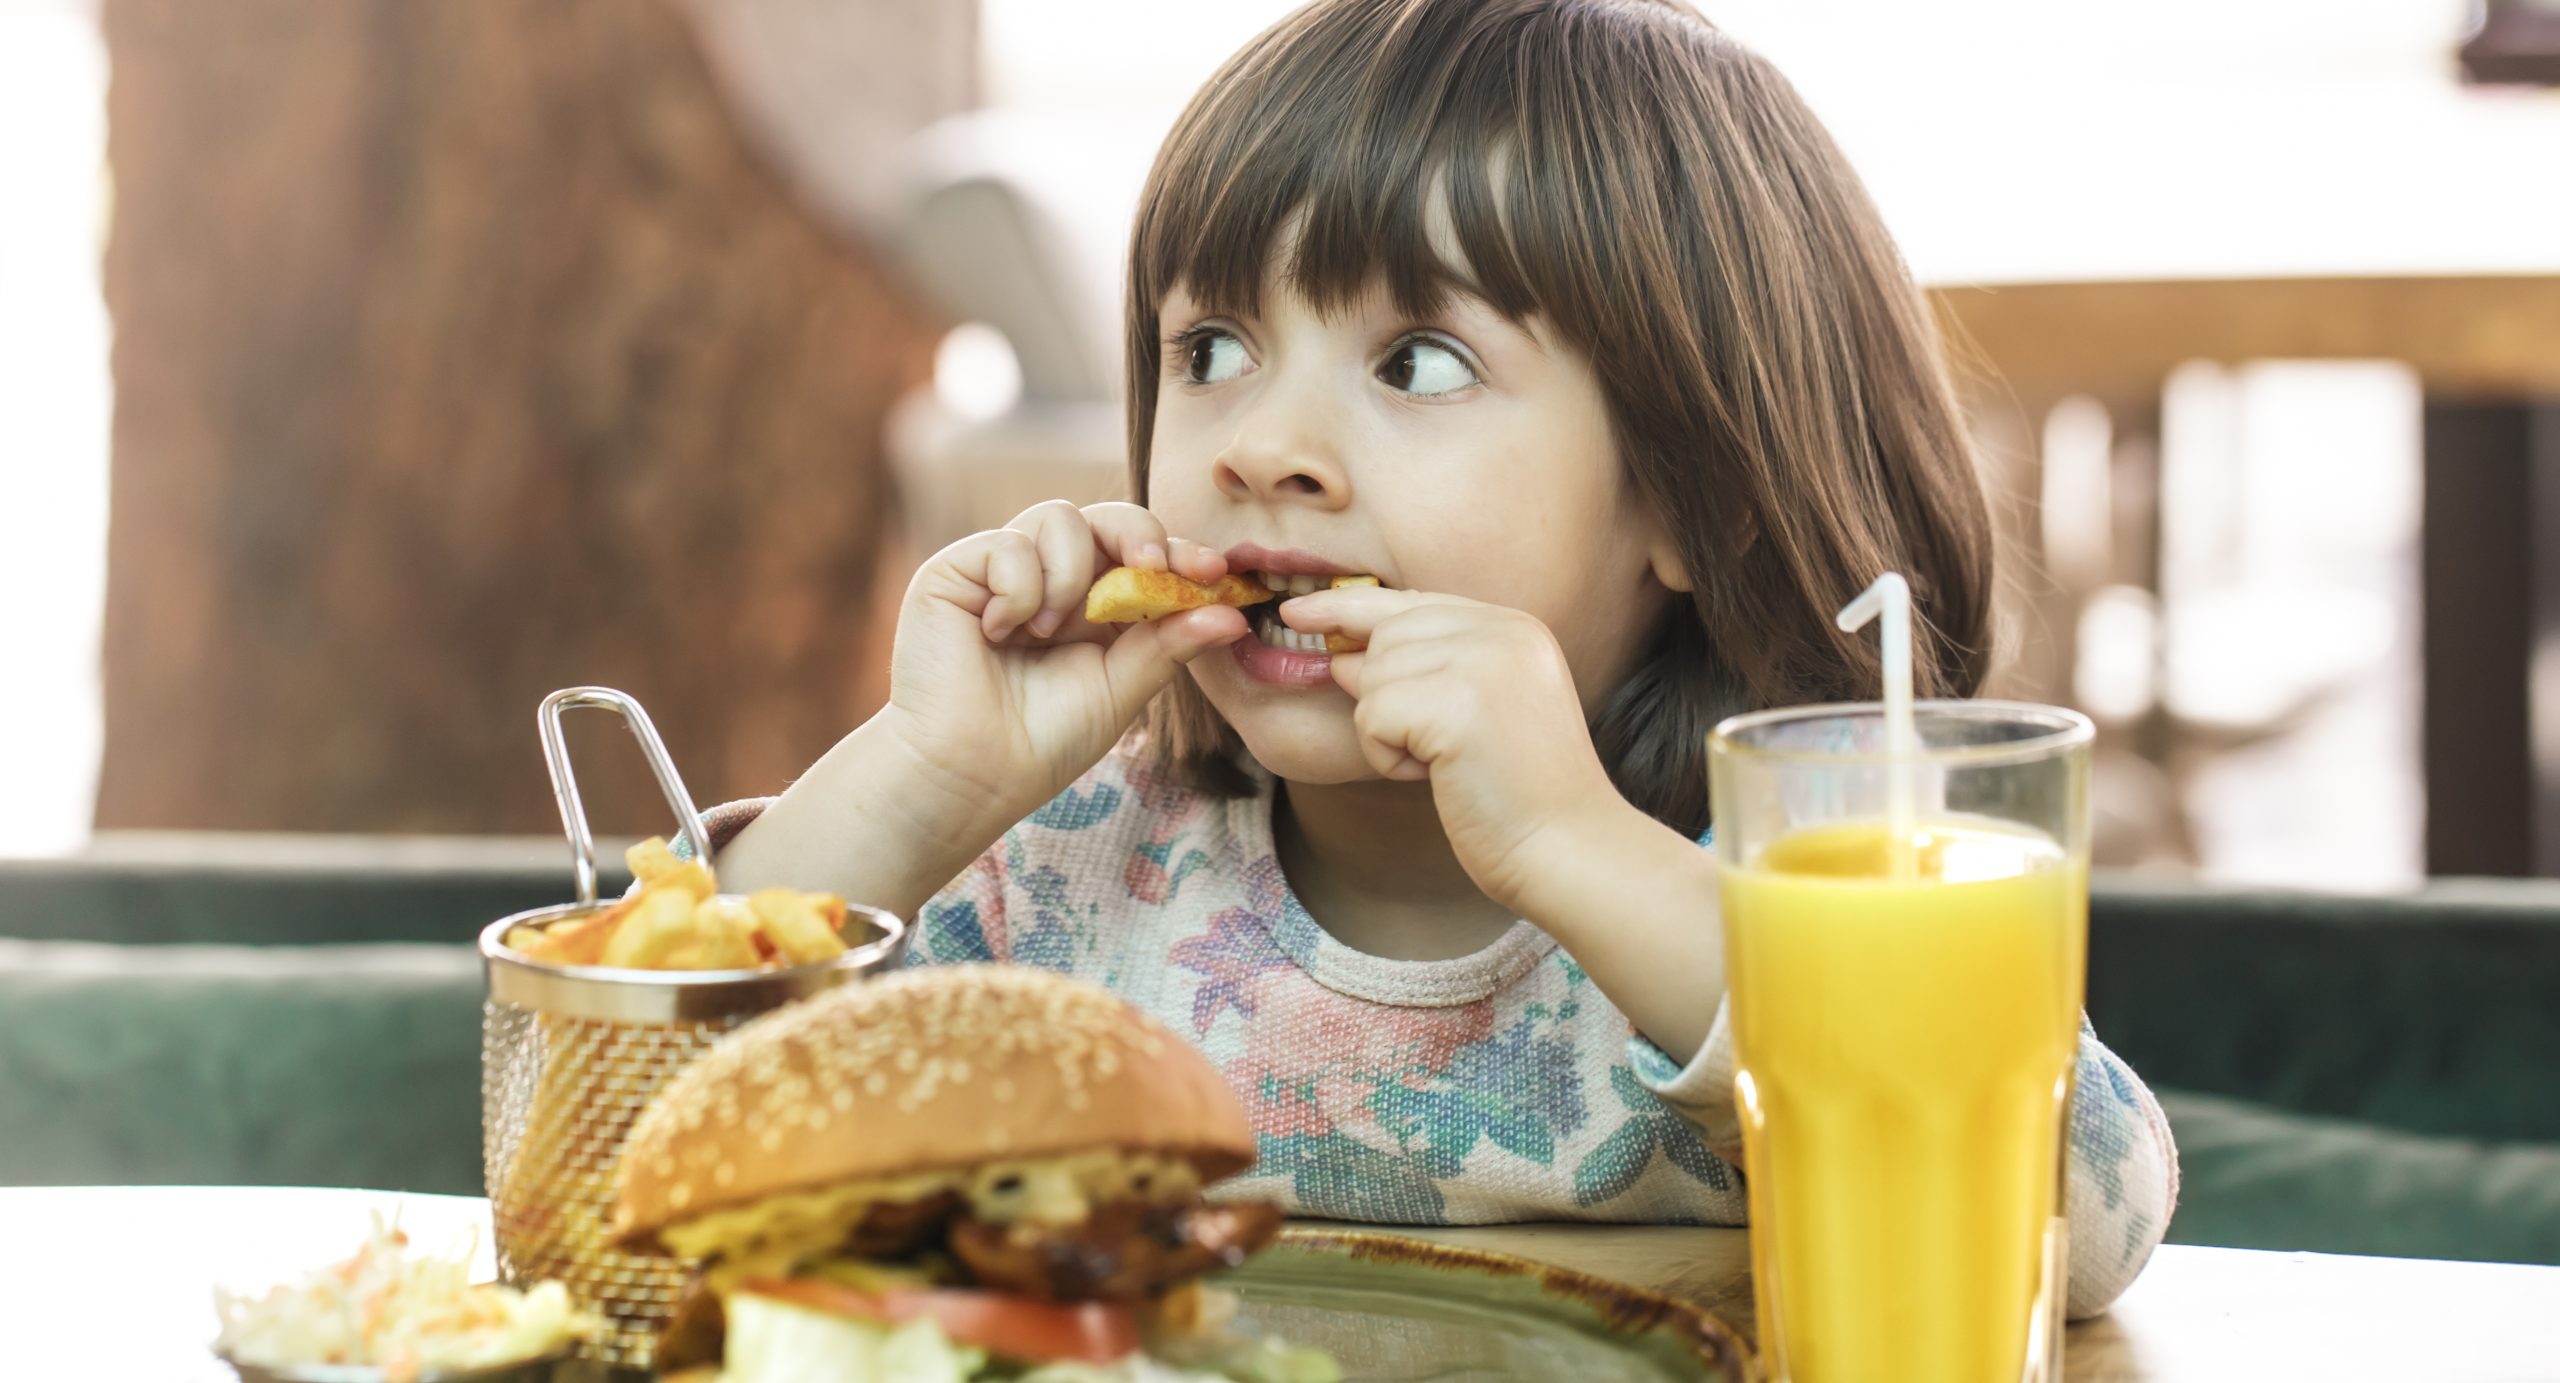  Estudio alerta sobre los peligros de los menús infantiles en locales de comida rápida